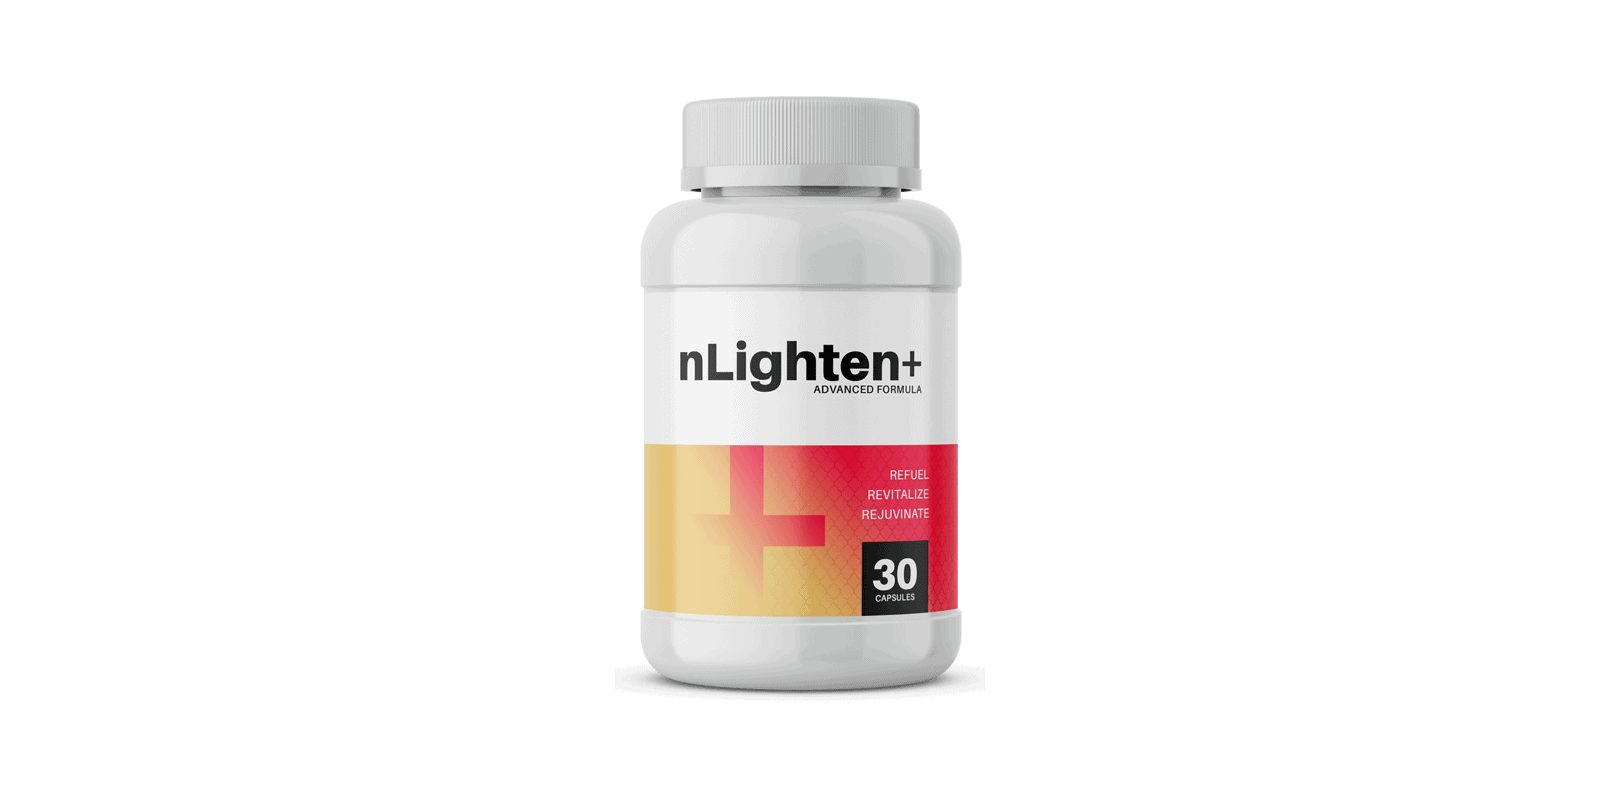 nLighten Plus reviews